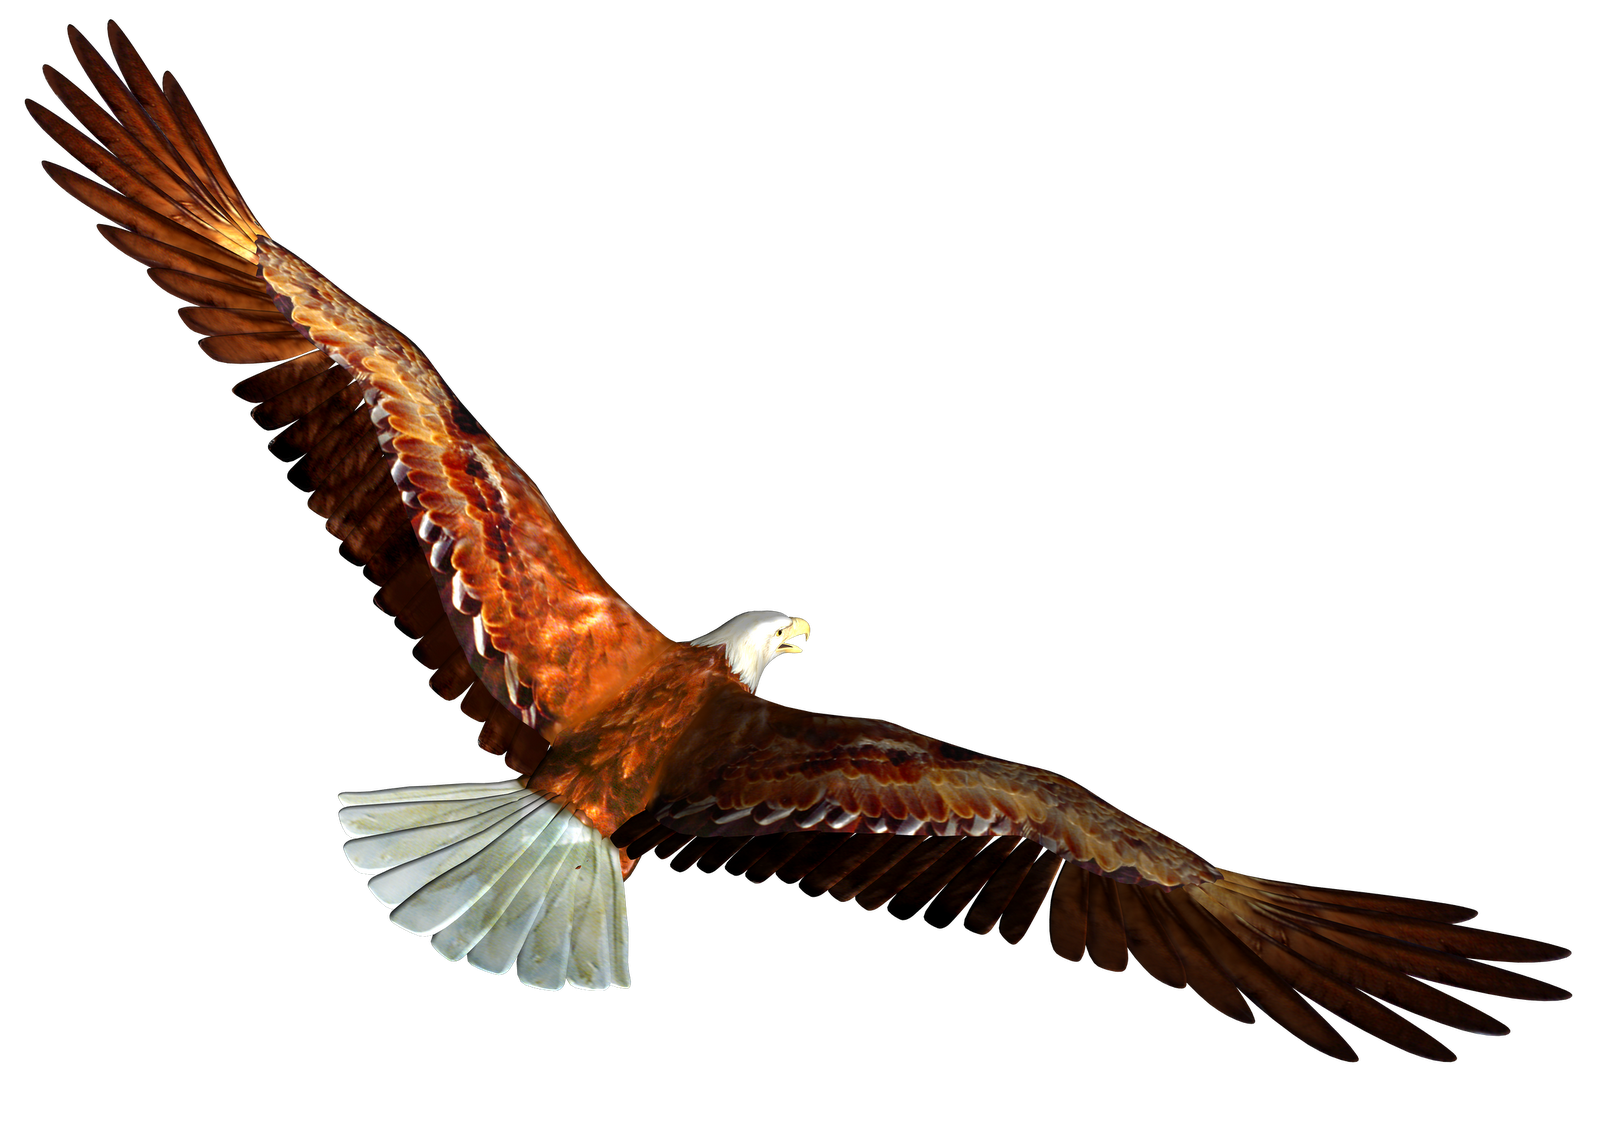 soaring eagle clip art free - photo #23